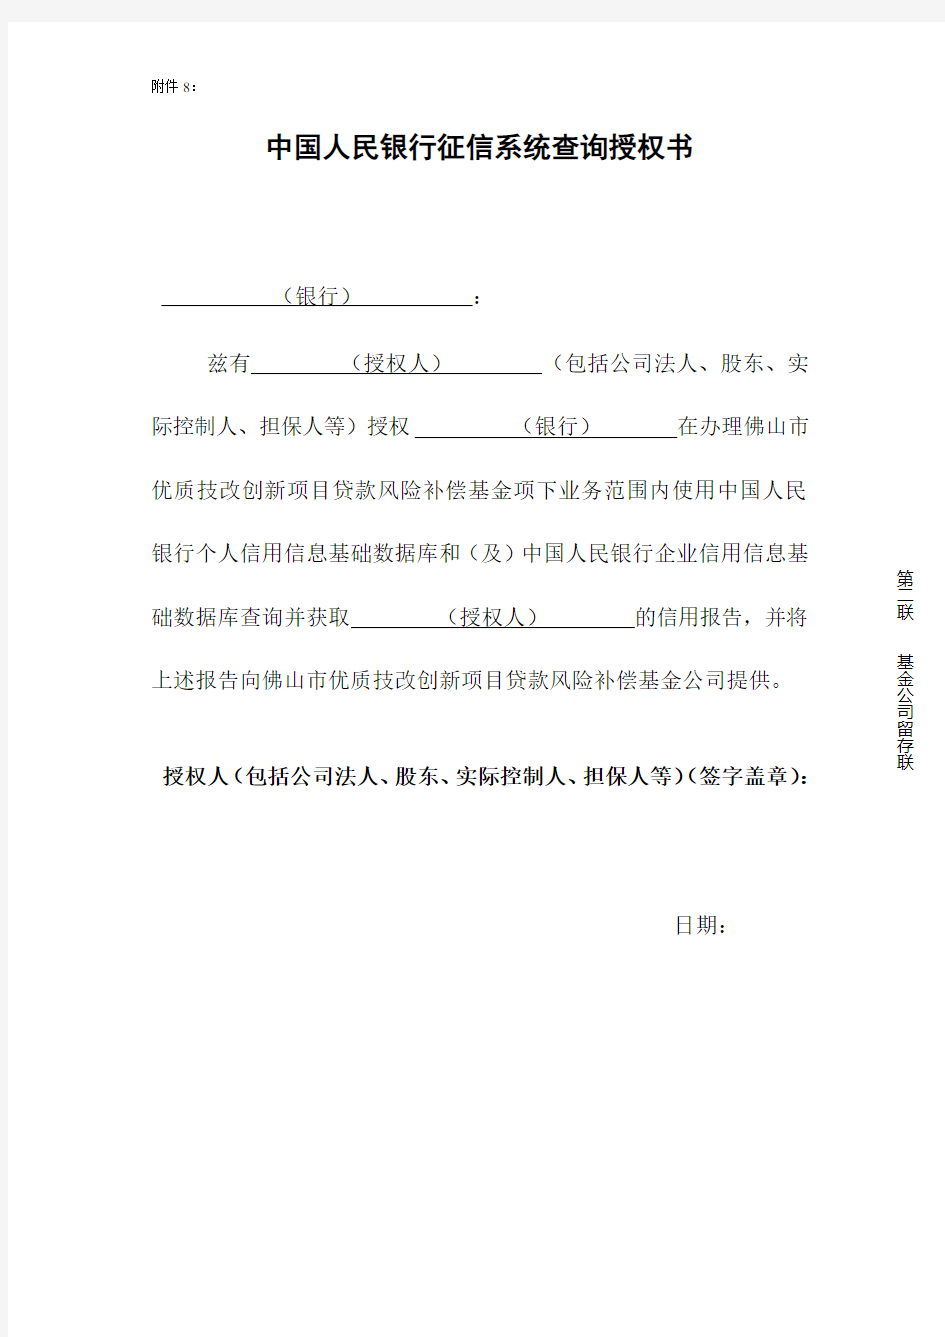 中国人民银行征信系统查询授权书